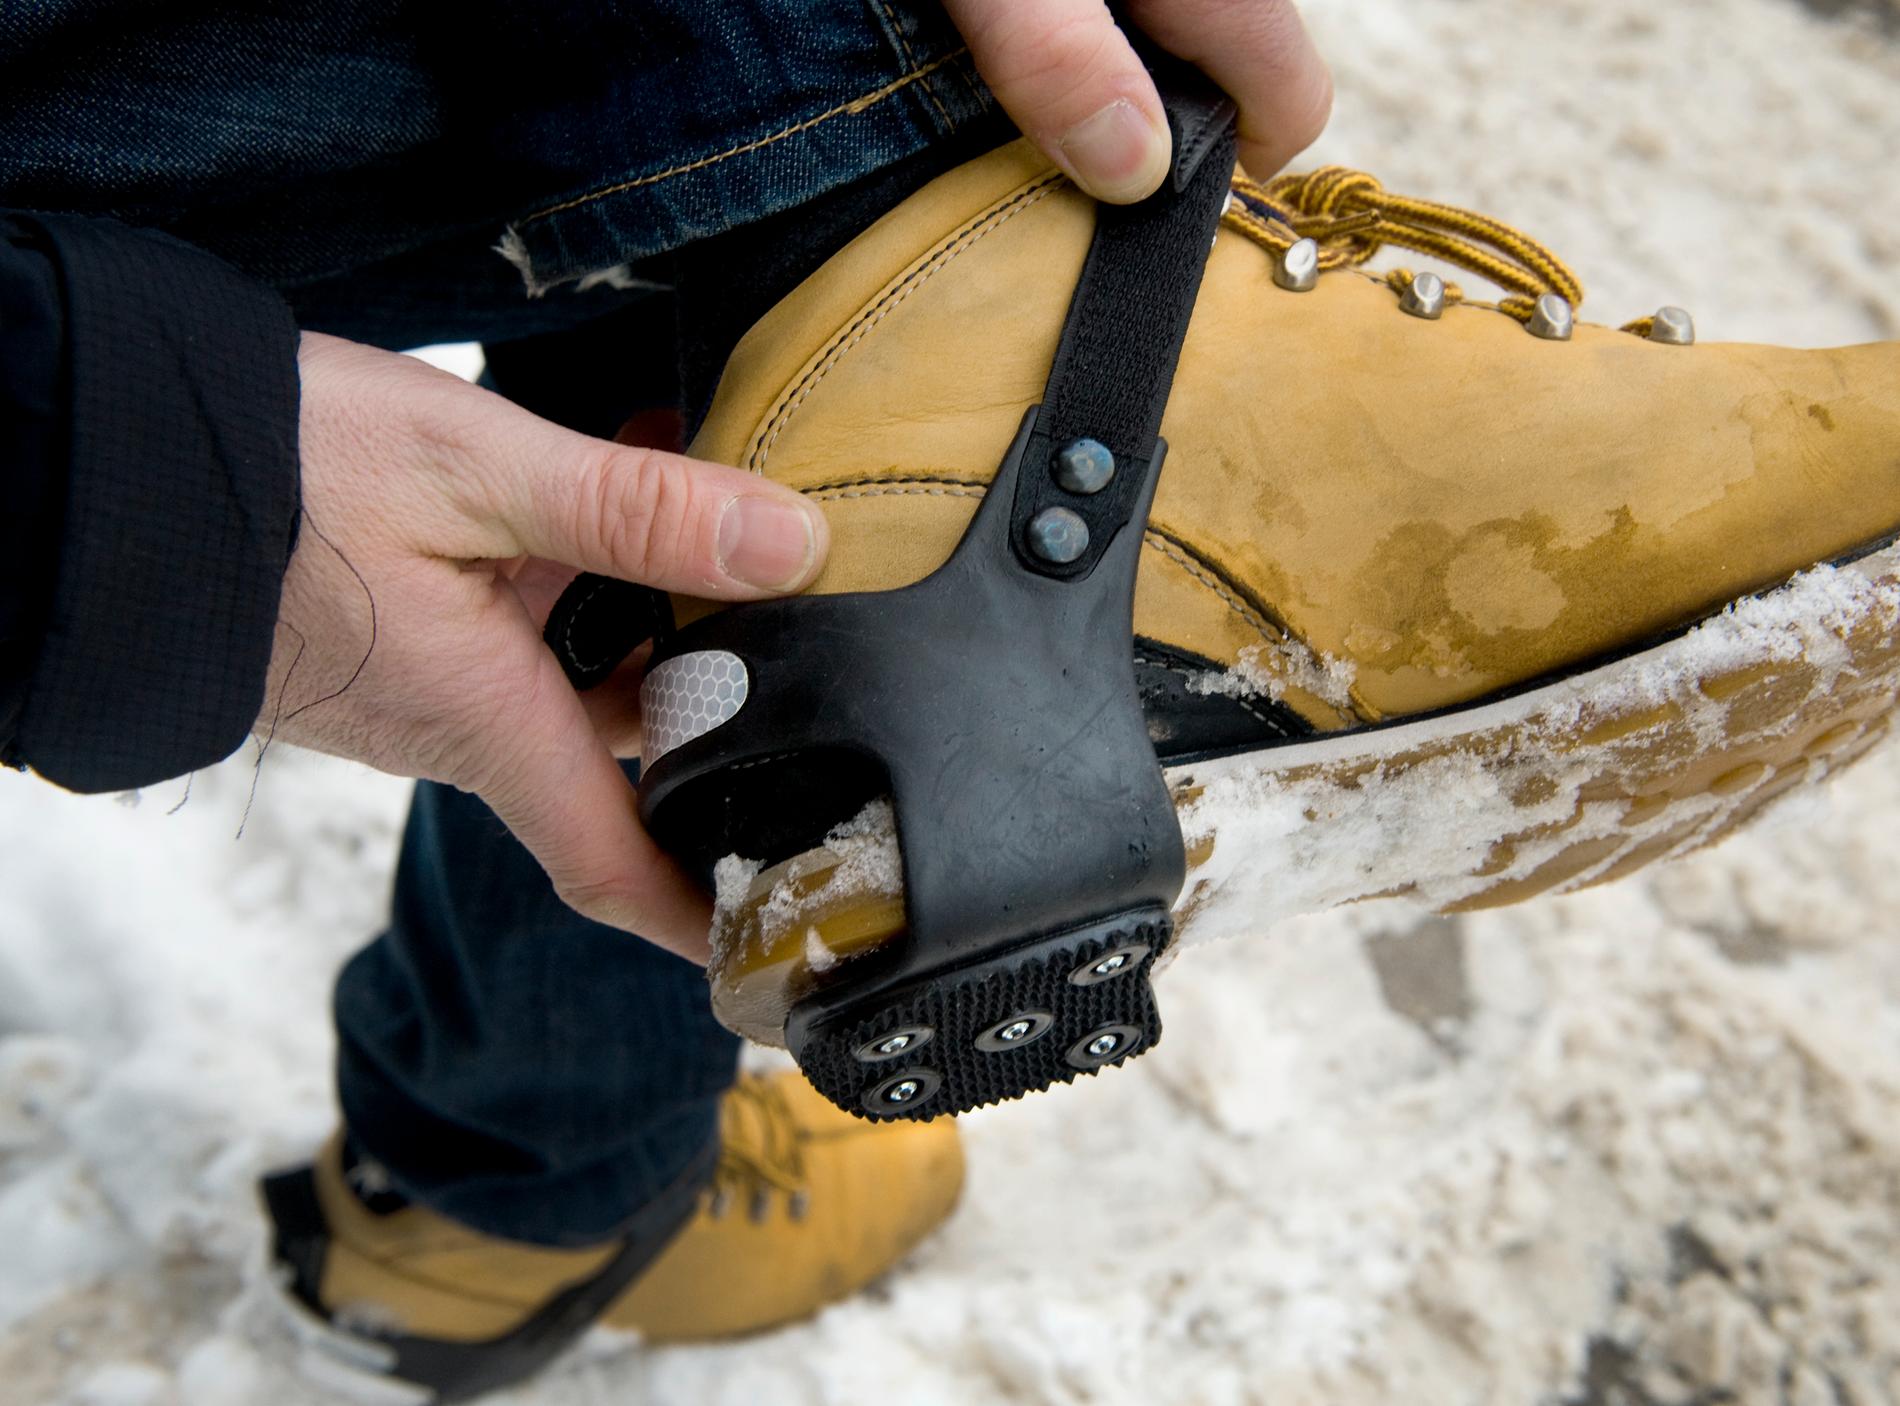 Broddar på skorna  förebygger benbrott och andra halkolyckor.